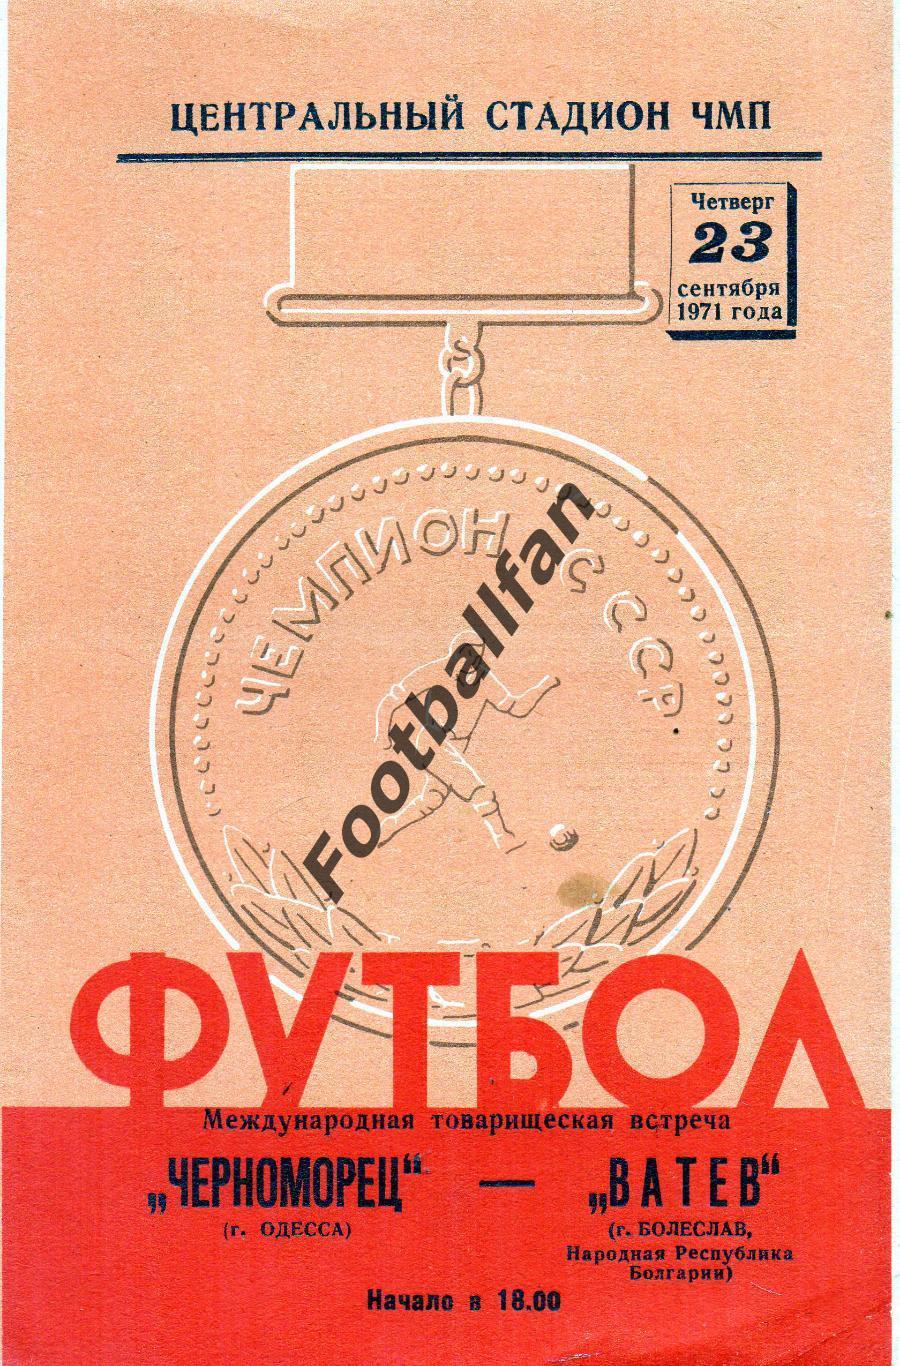 Черноморец Одесса , СССР - Ватев Болеслав , Болгария 23.08.1971